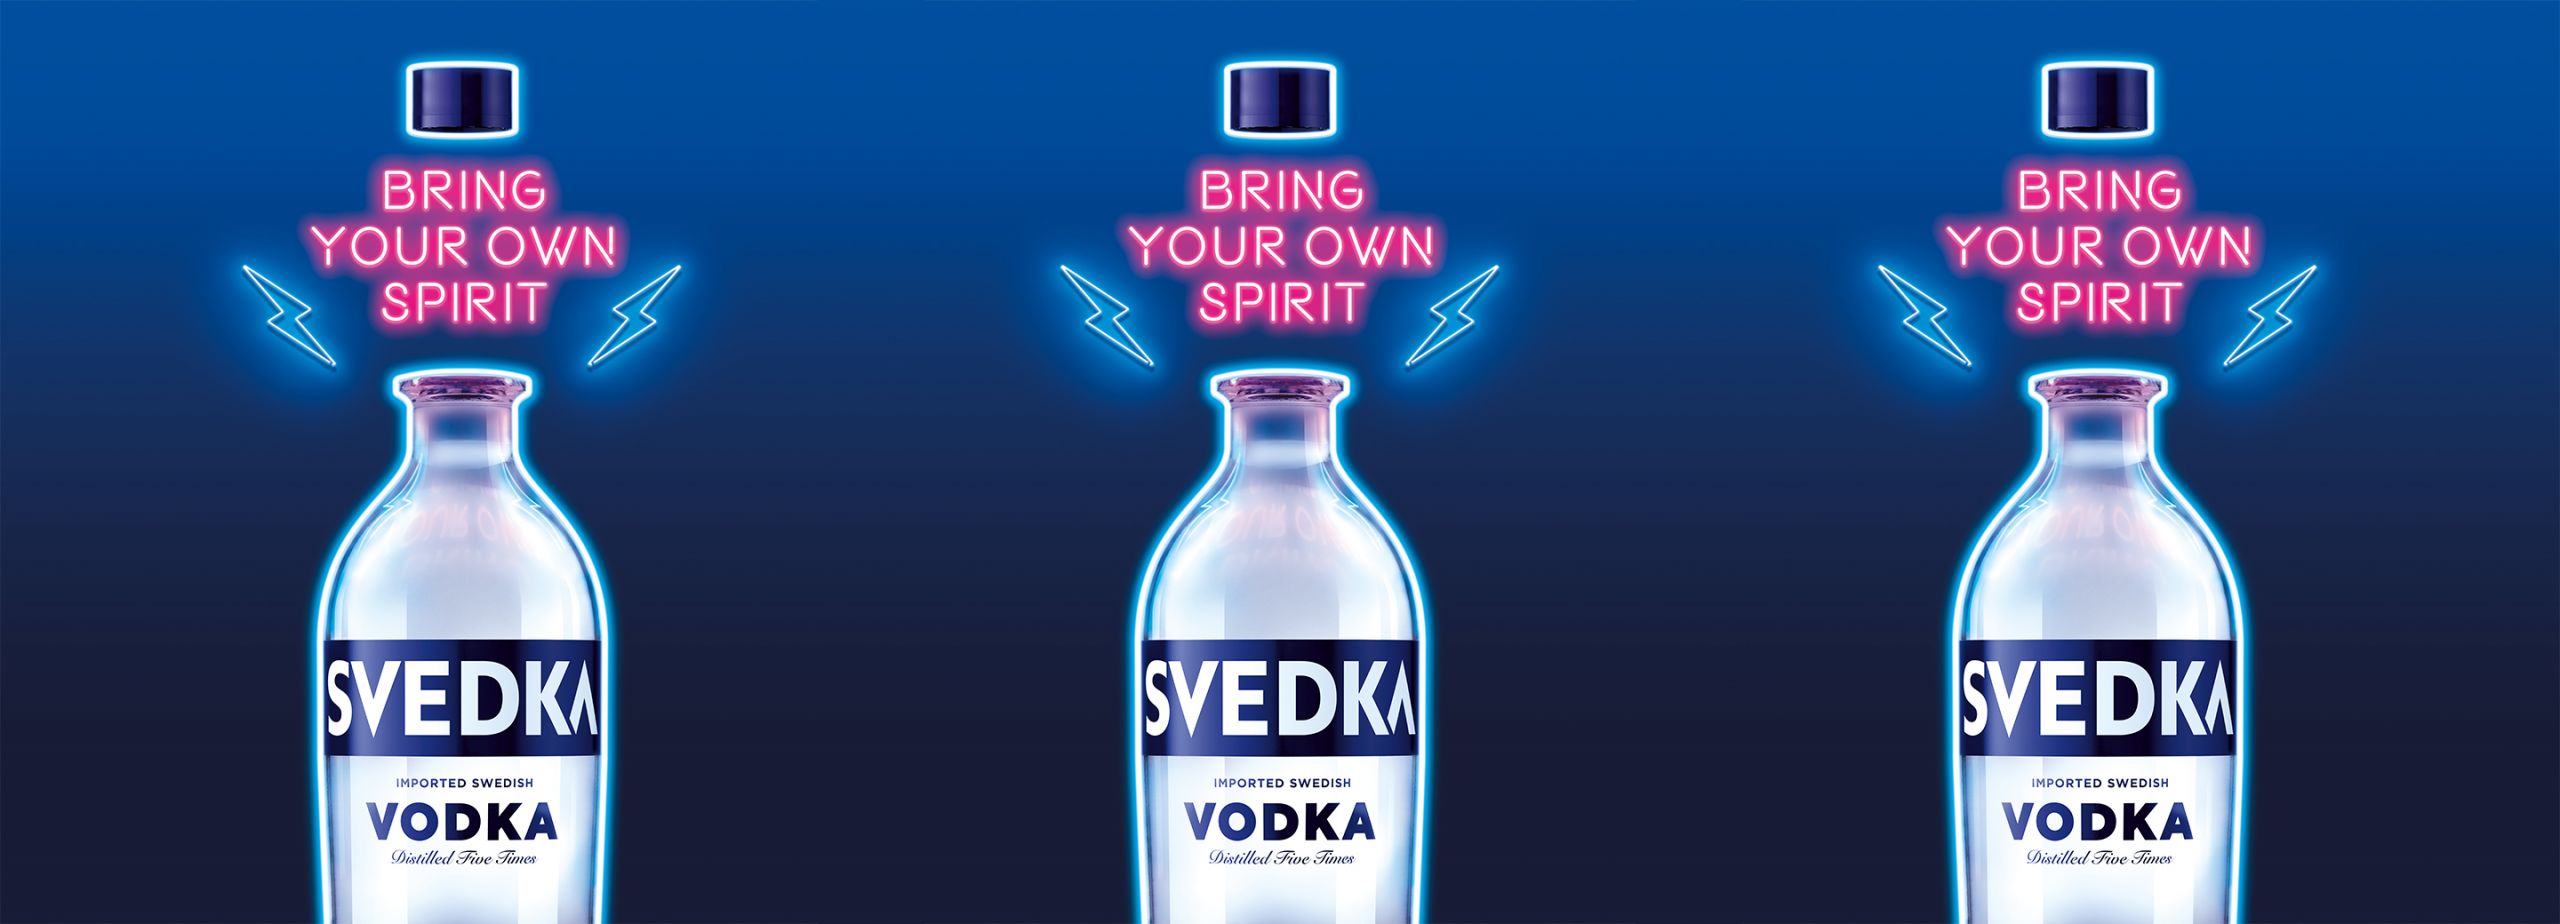 Bring Your Own Spirit